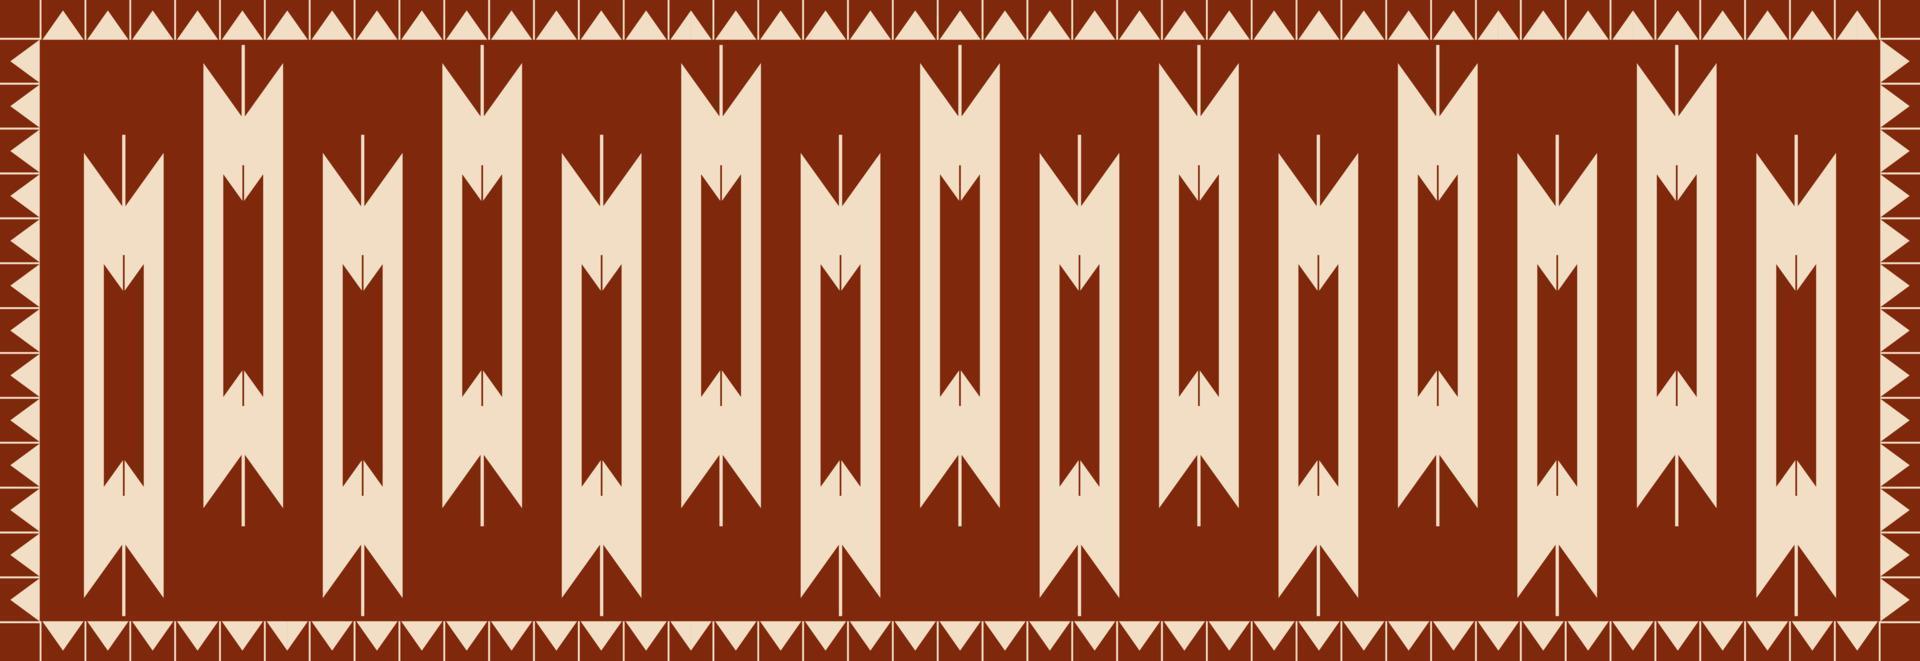 azteca navajo zona alfombra modelo. étnico tradicional Sur oeste geométrico modelo utilizar para alfombra, alfombra, tapiz, estera, mesa corredor, etc. étnico boho Sur oeste modelo piso alfombra tela diseño. vector